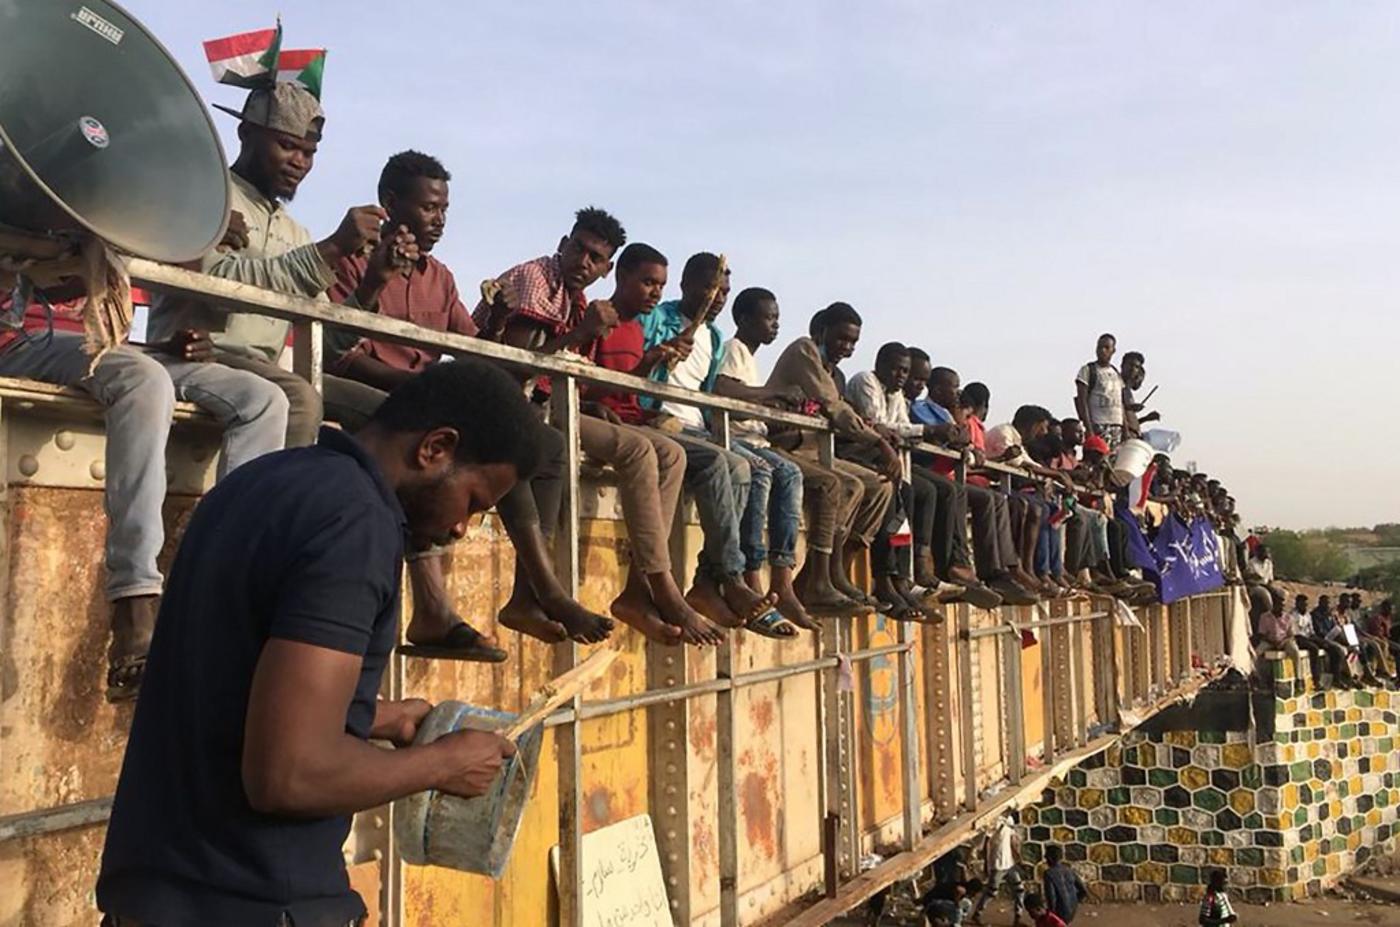 Khartoum protests